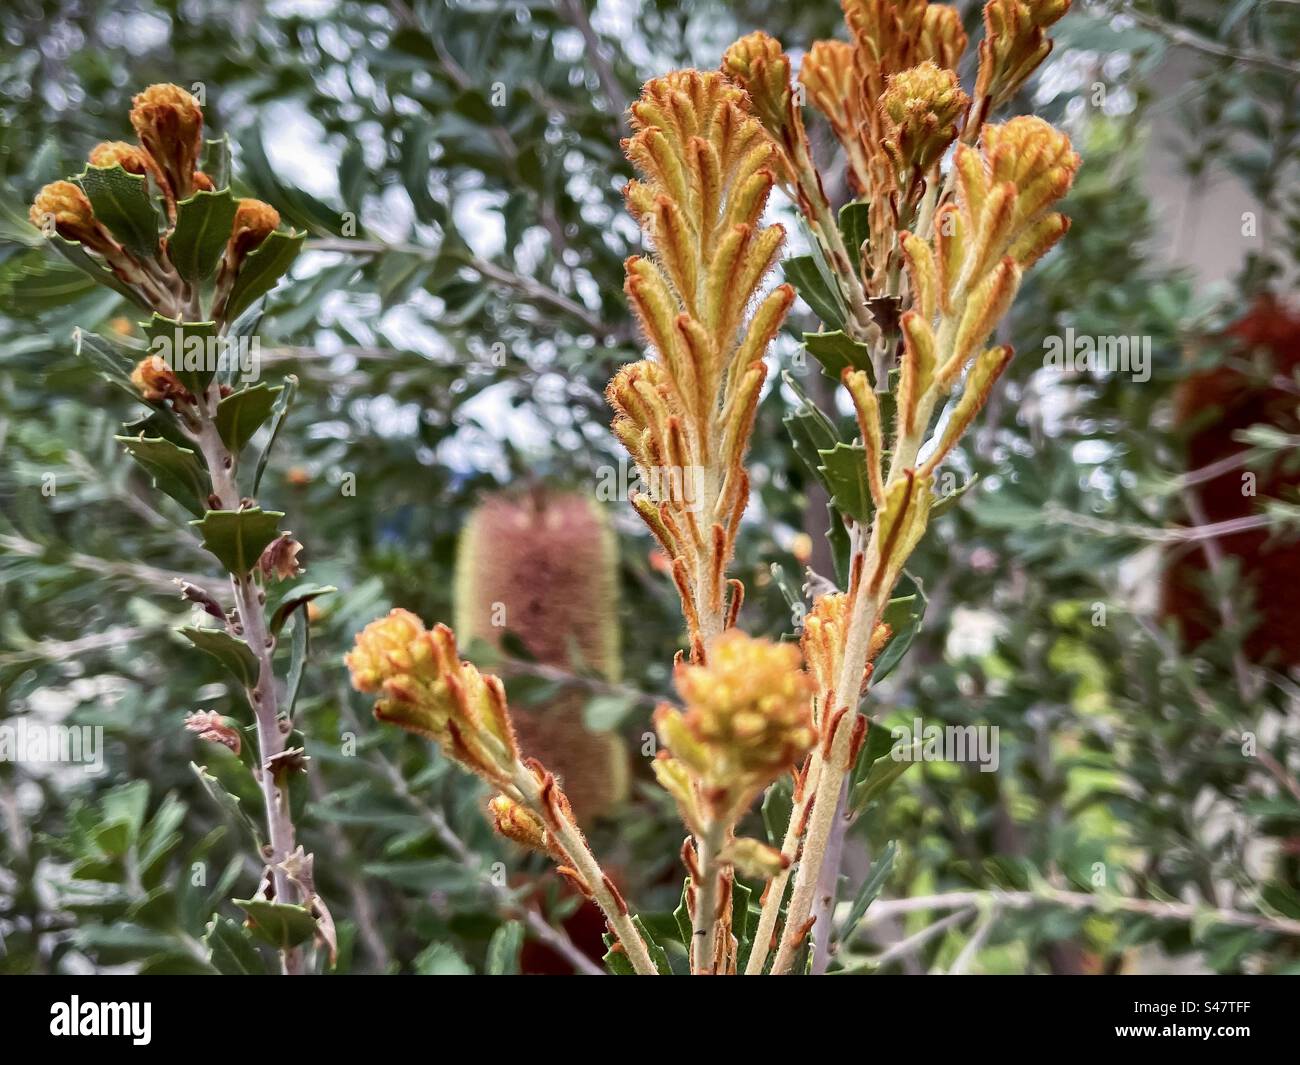 Gros plan des boutons floraux jaunes et des fleurs en cône rouge de Banksia praemorsa/arbuste Banksia à feuilles coupées, une plante indigène australienne au printemps. Concentrez-vous sur le premier plan. Banque D'Images